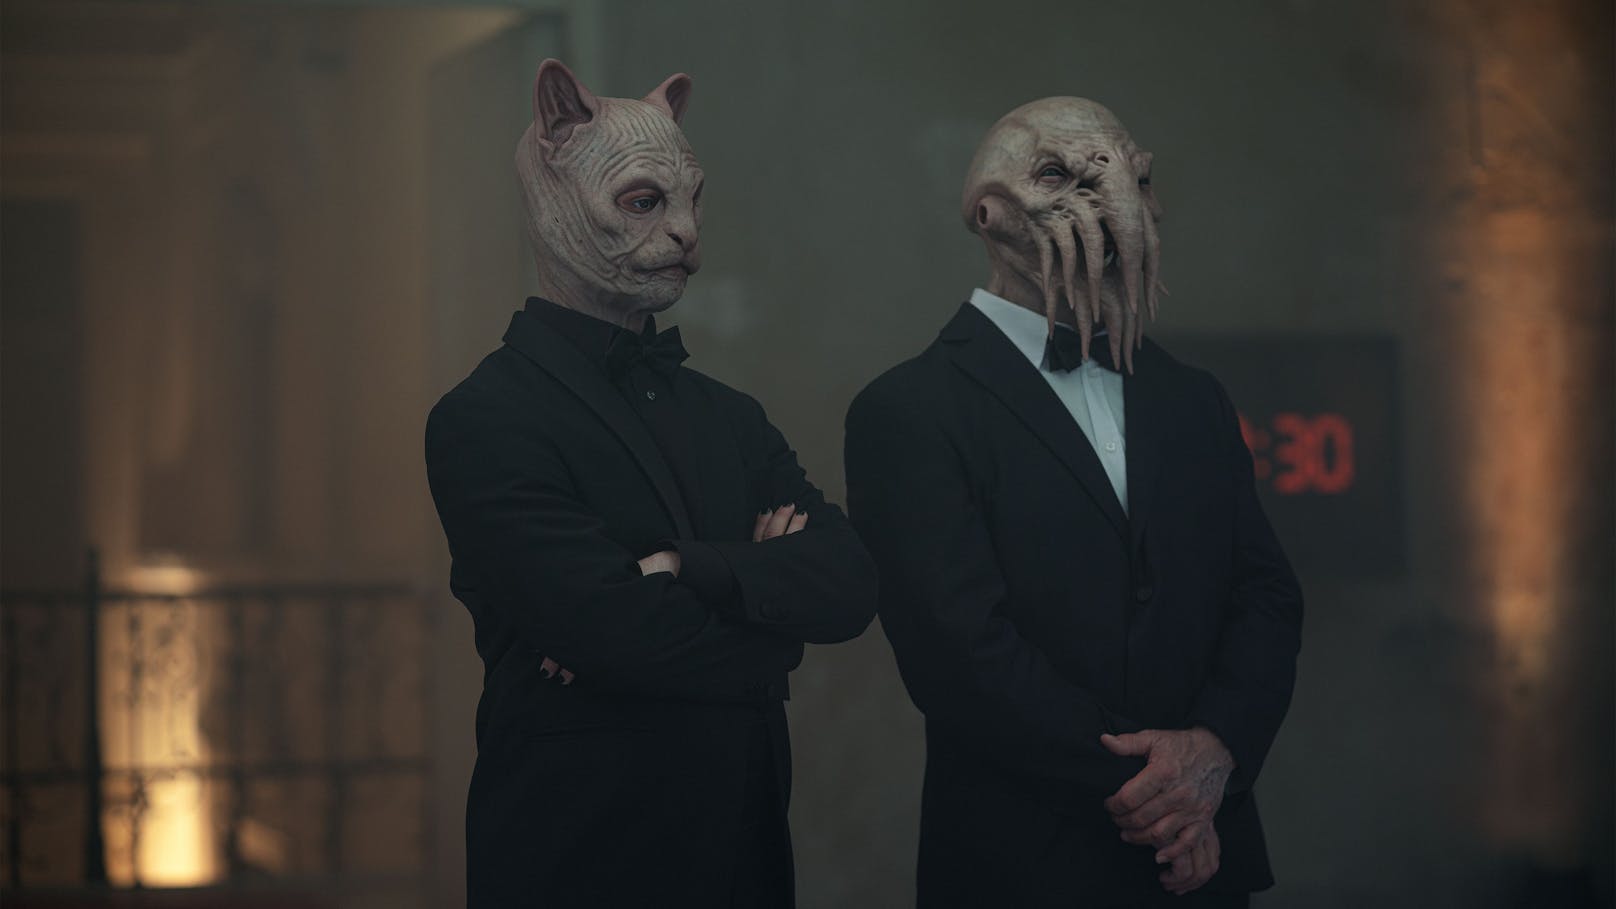 Die Masken in "Beasts Like Us" sind tatsächlich fantastisch!